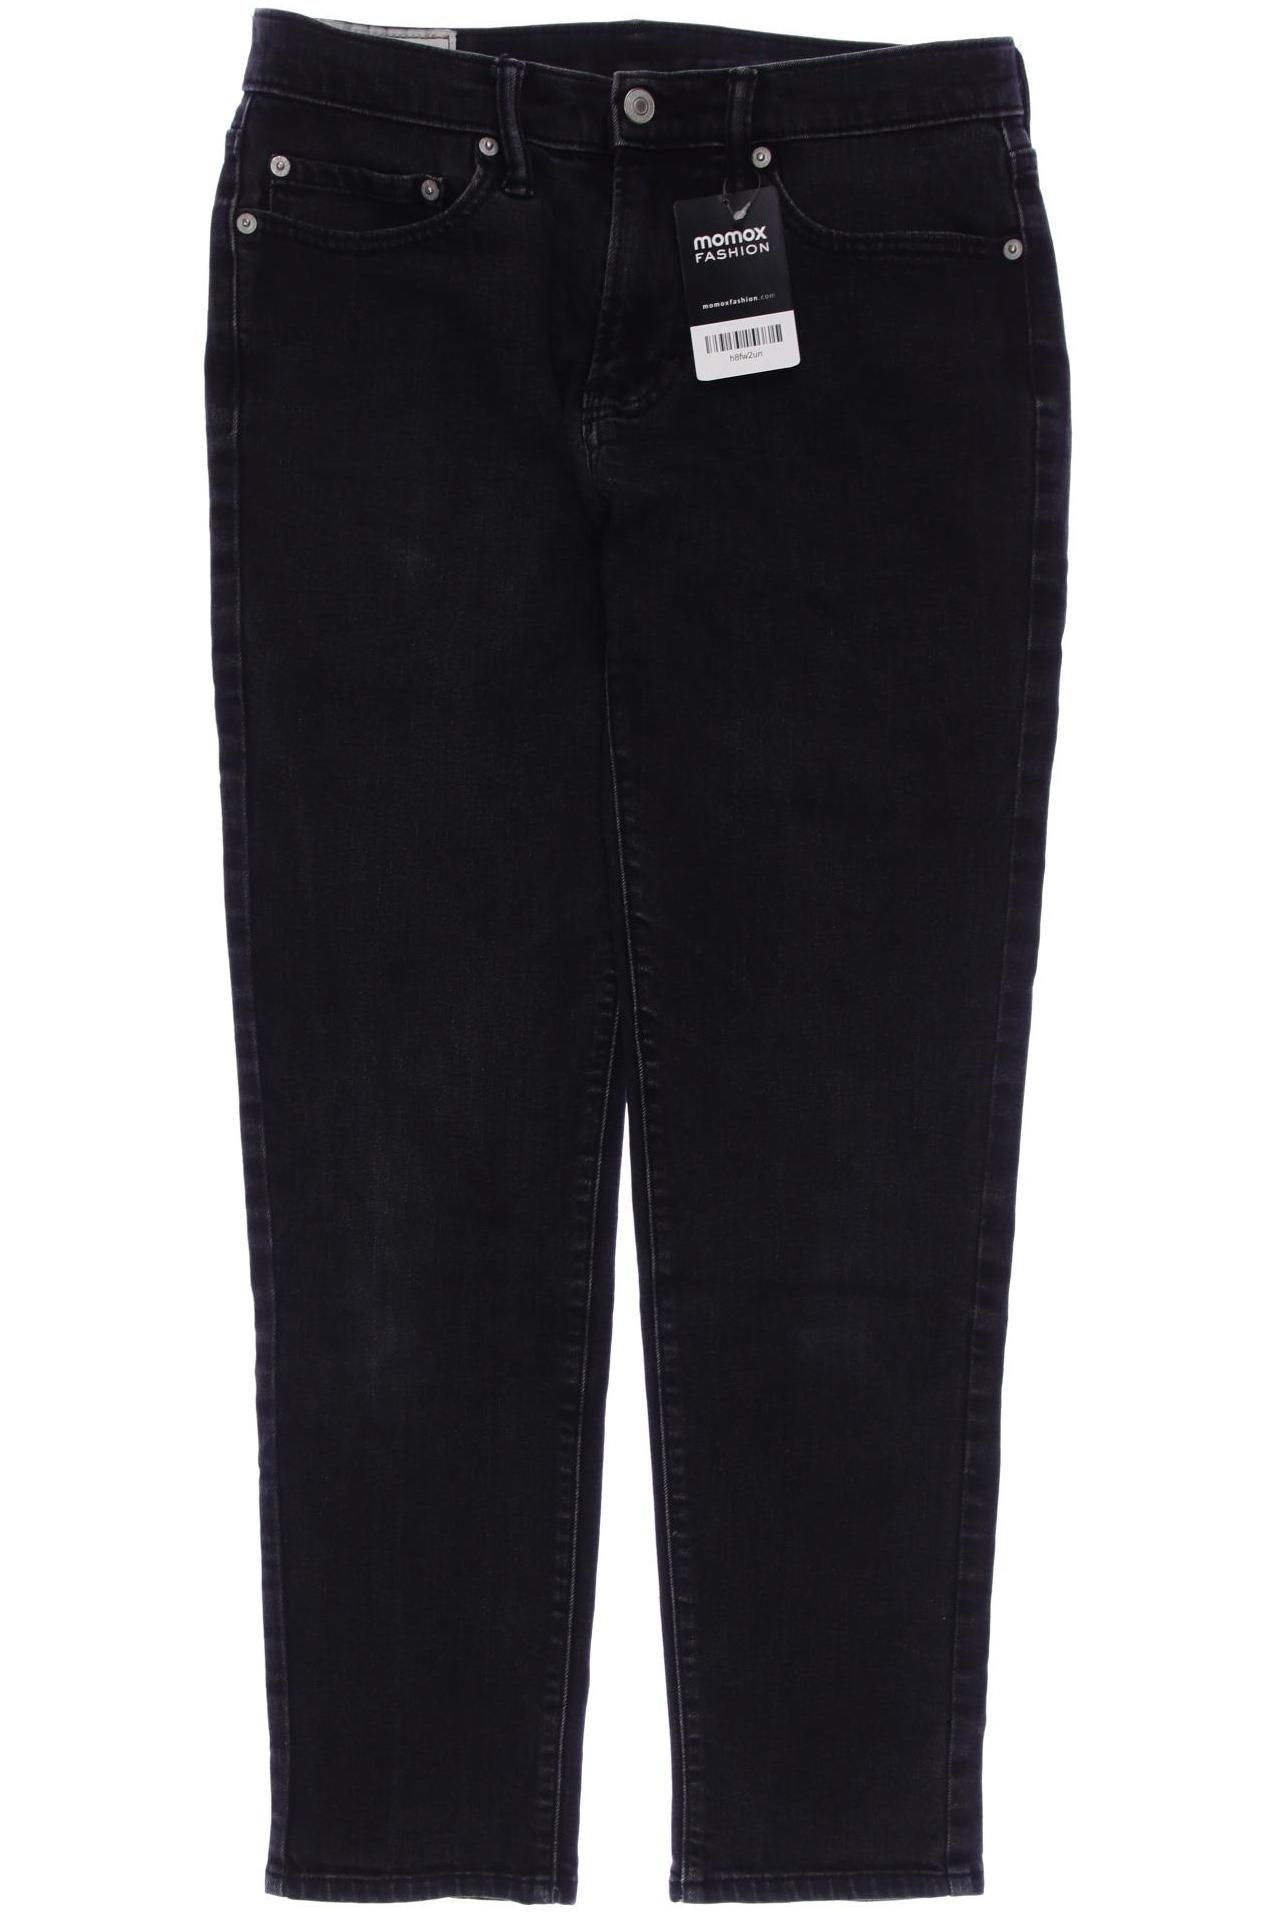 Abercrombie & Fitch Herren Jeans, schwarz, Gr. 44 von Abercrombie & Fitch